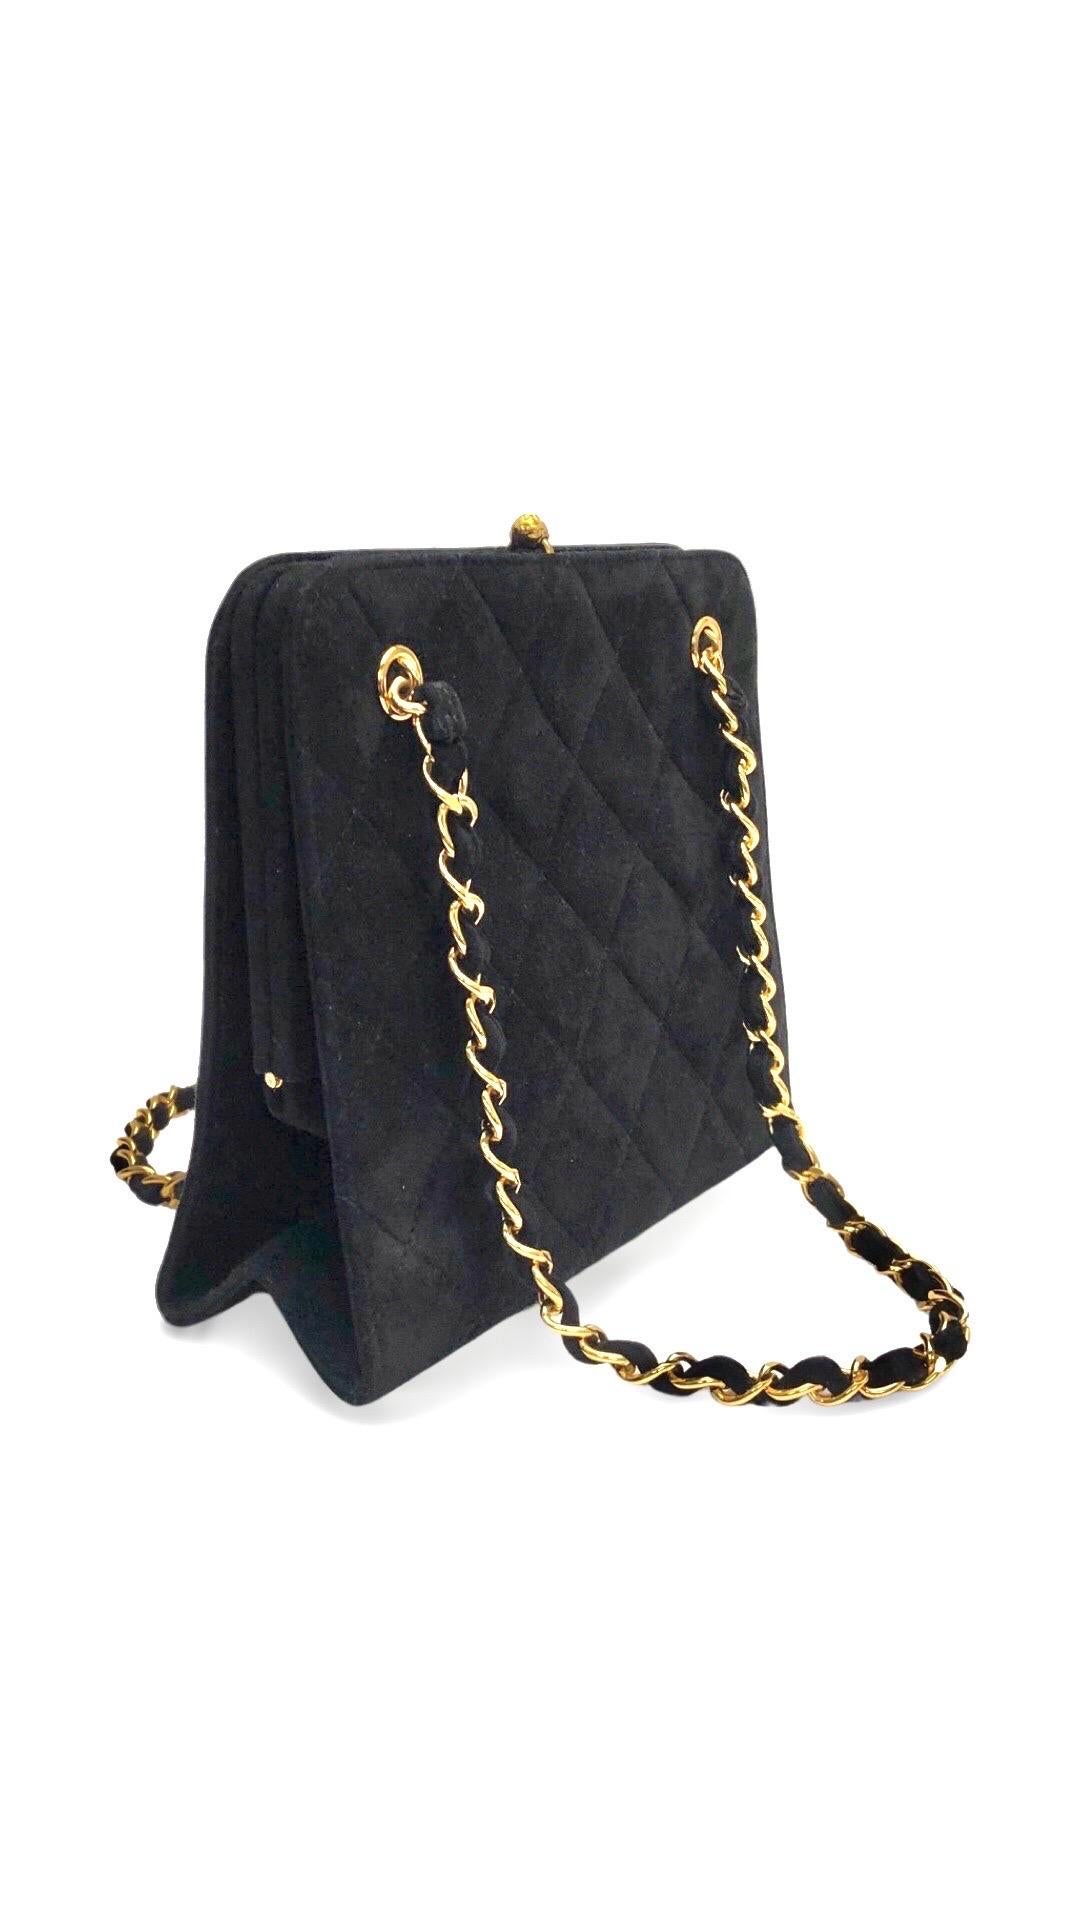 - Chanel schwarzes Wildleder gesteppt gold getönten Kette Handtasche aus dem Jahr 1996 bis 1997 collection. 

- Ausgestattet mit einem goldfarbenen 